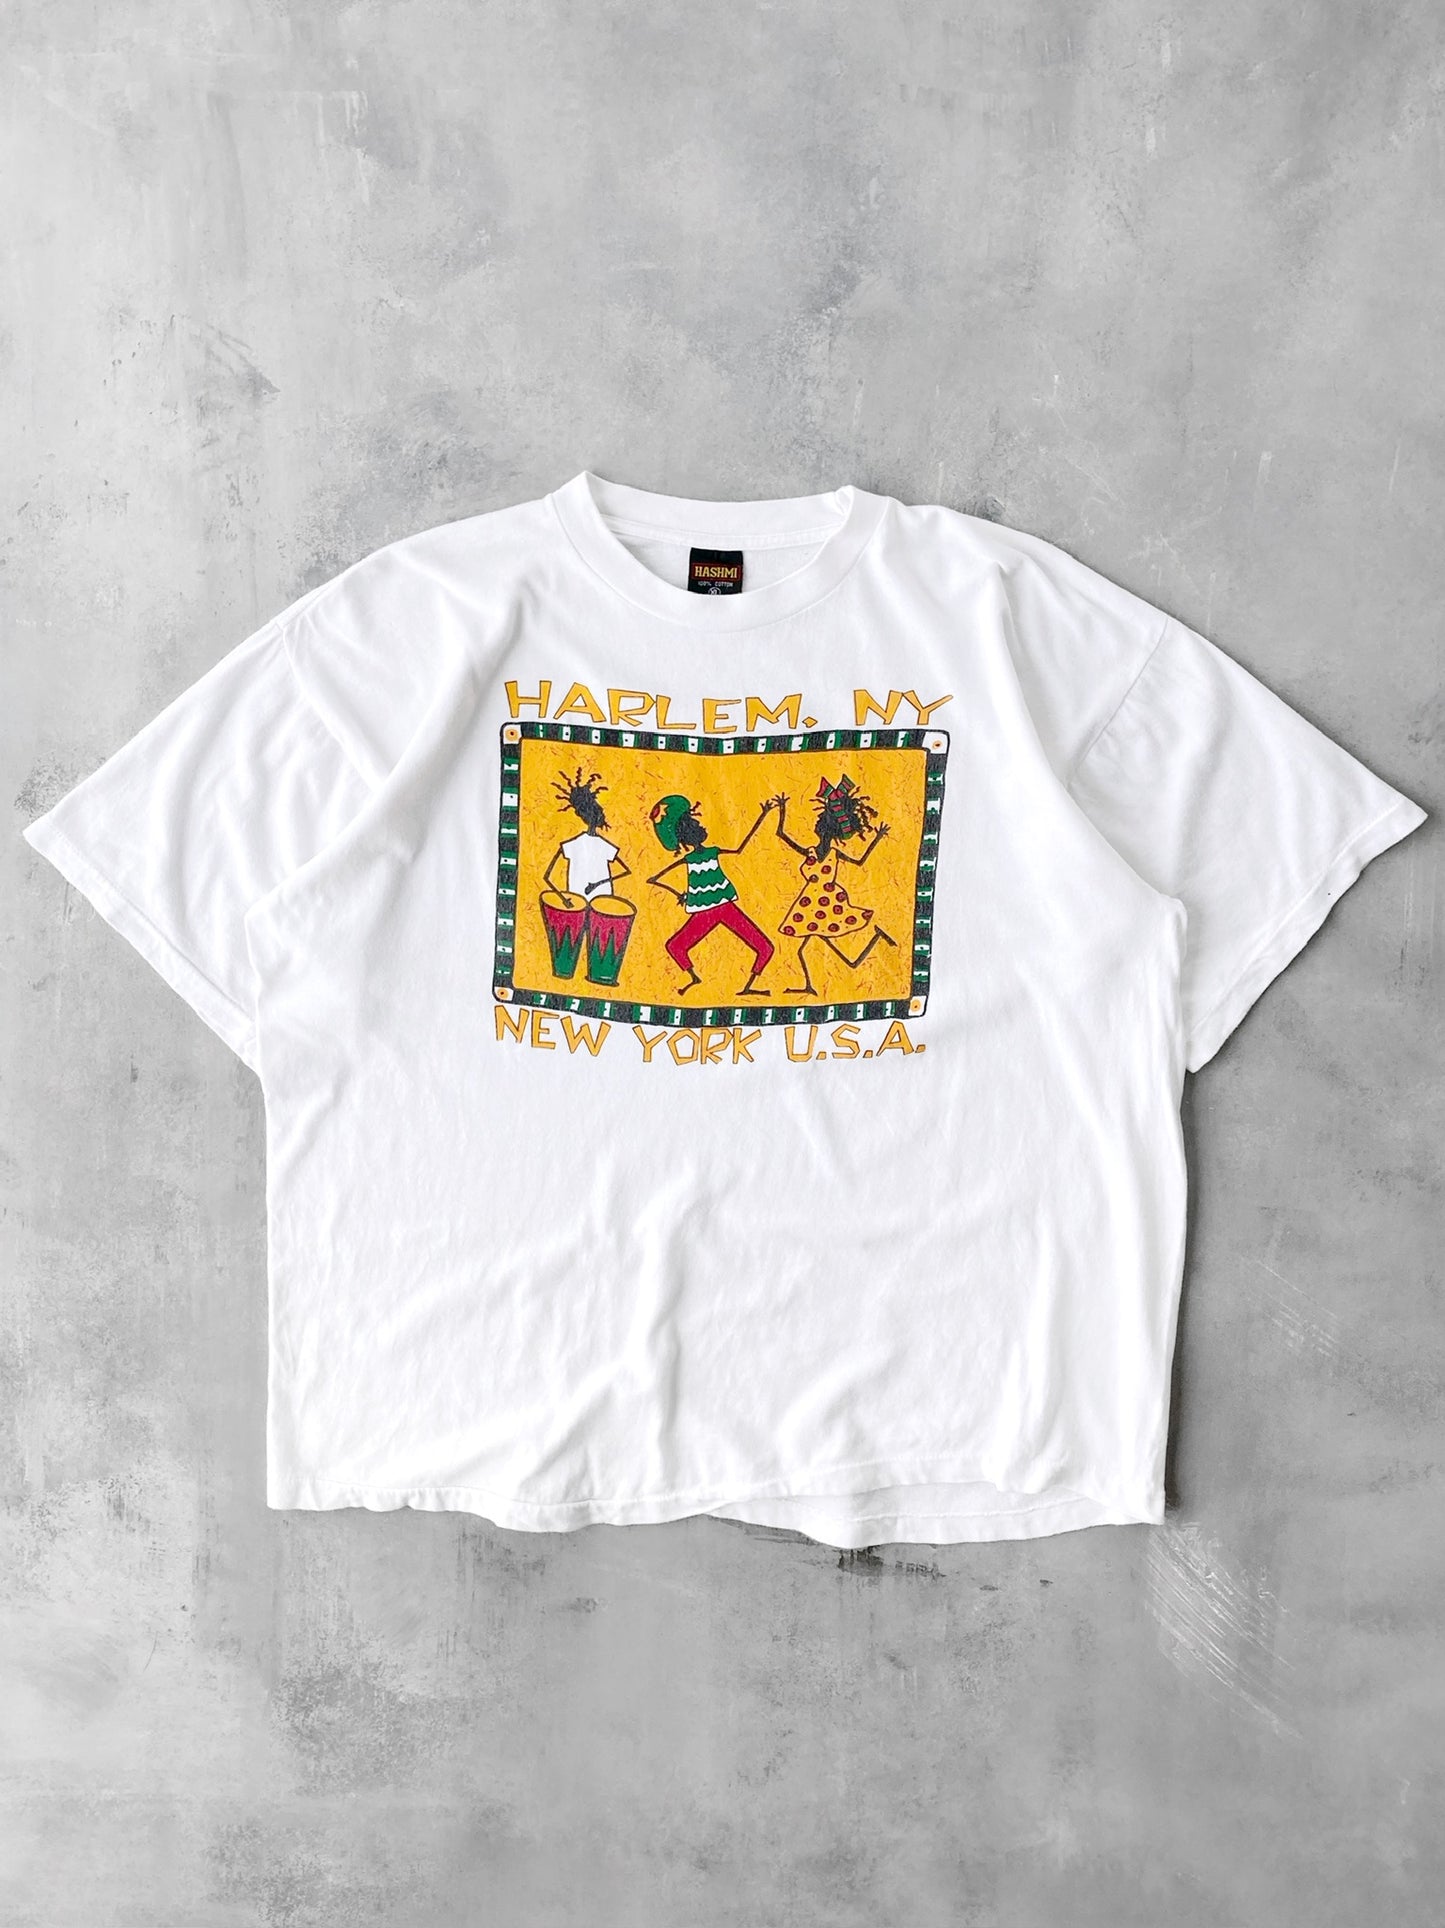 Harlem, New York T-Shirt 90's - XL